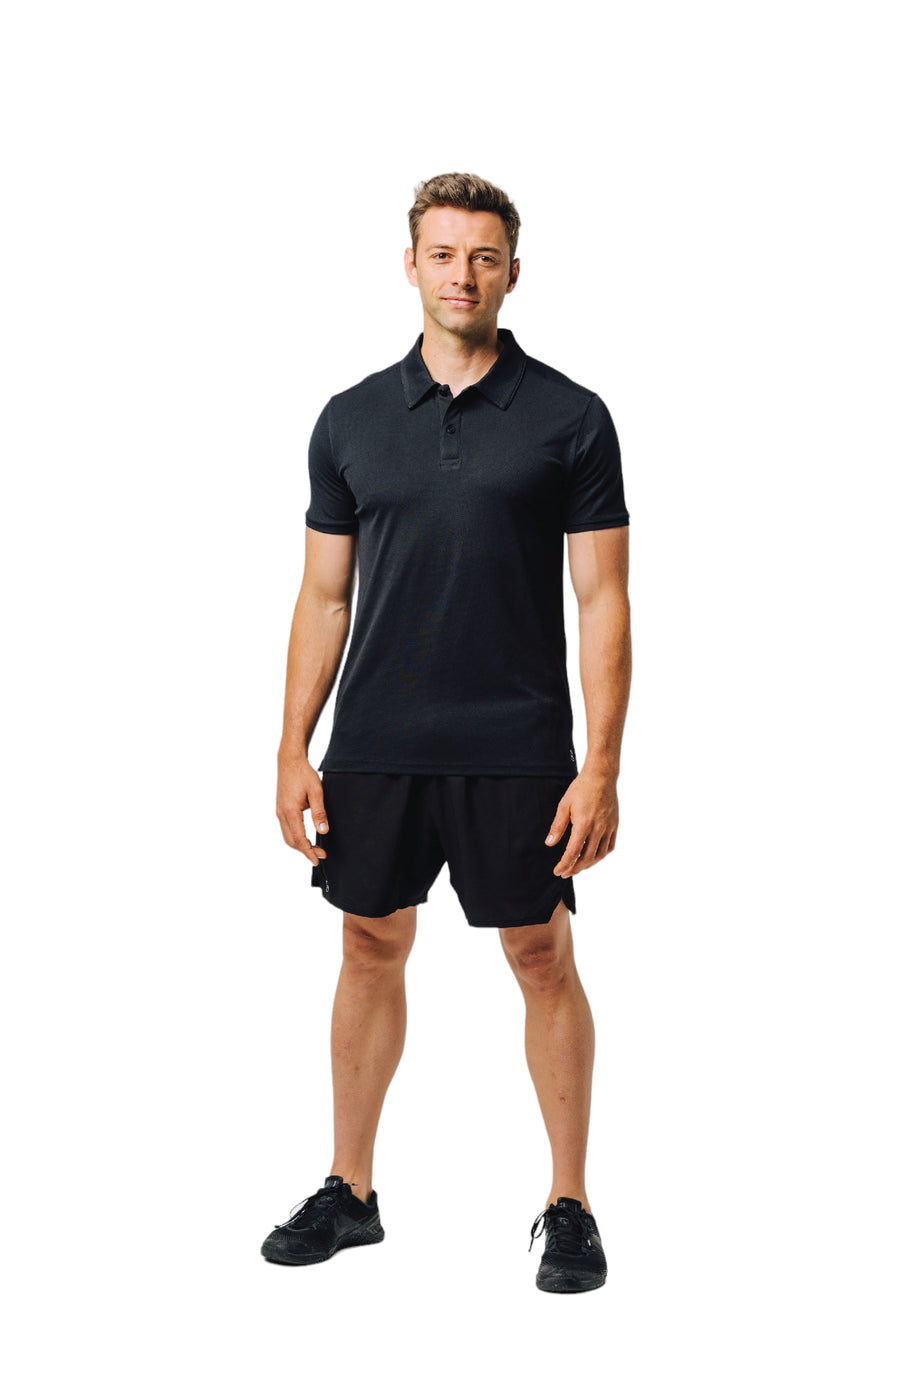 Mens Dual Tech Polo | Blank Sportswear | Branded Blank Sportswear